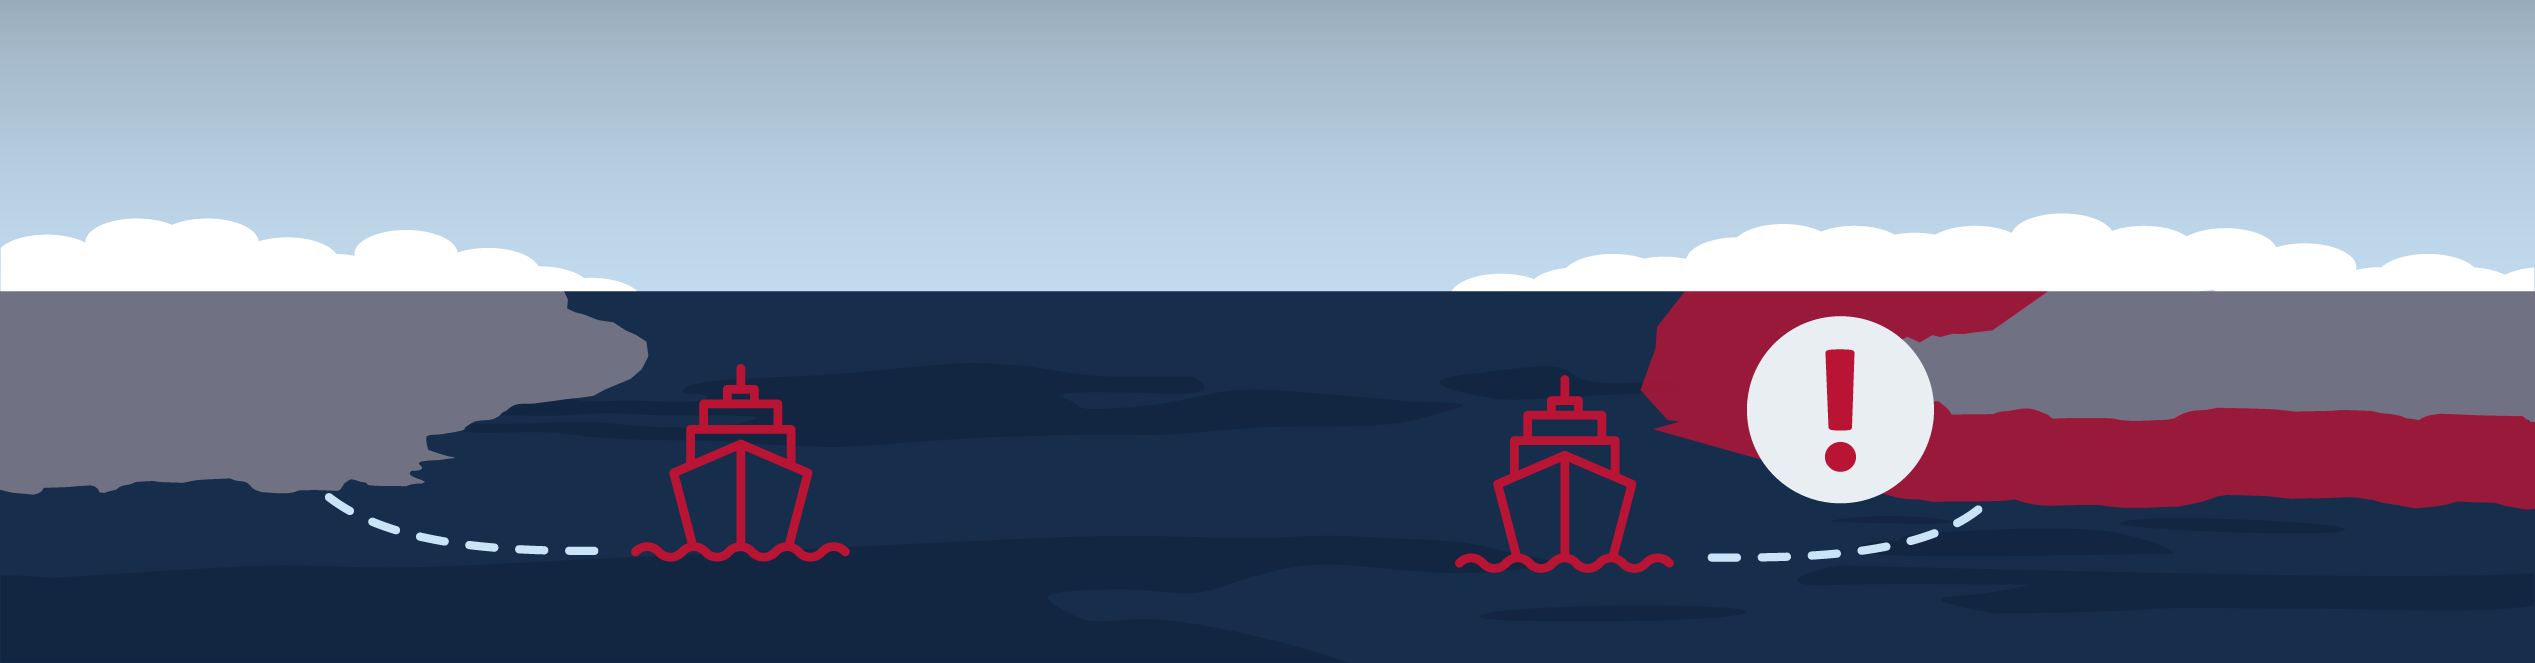 vessel gap illustration